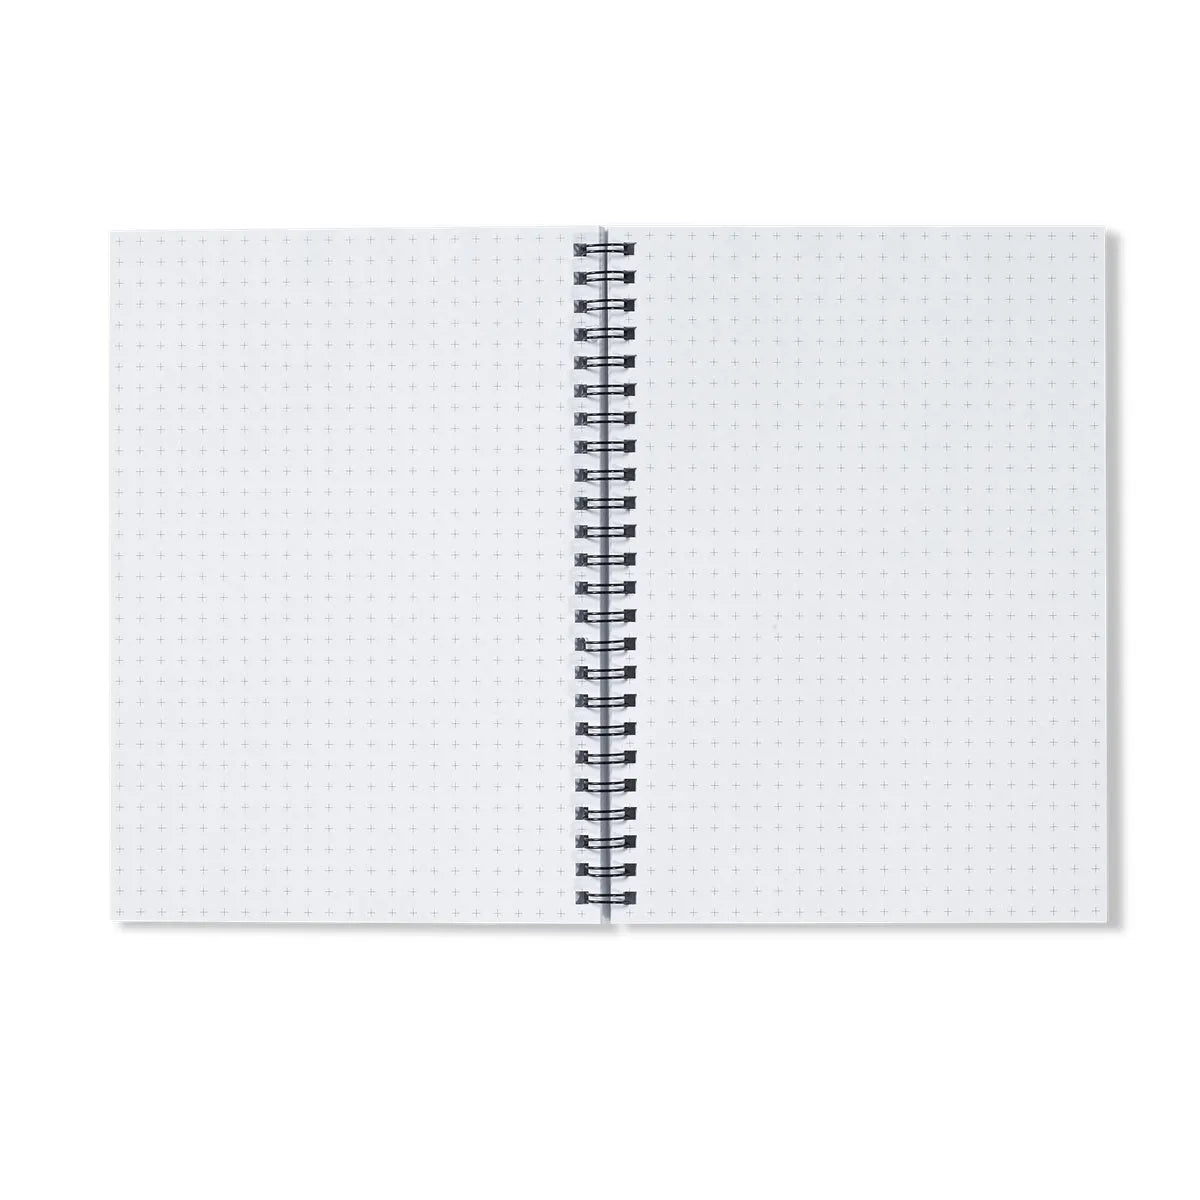 Martins-pêcheurs By Maurice Pillard Verneuil Notebook - Notebooks & Notepads - Aesthetic Art